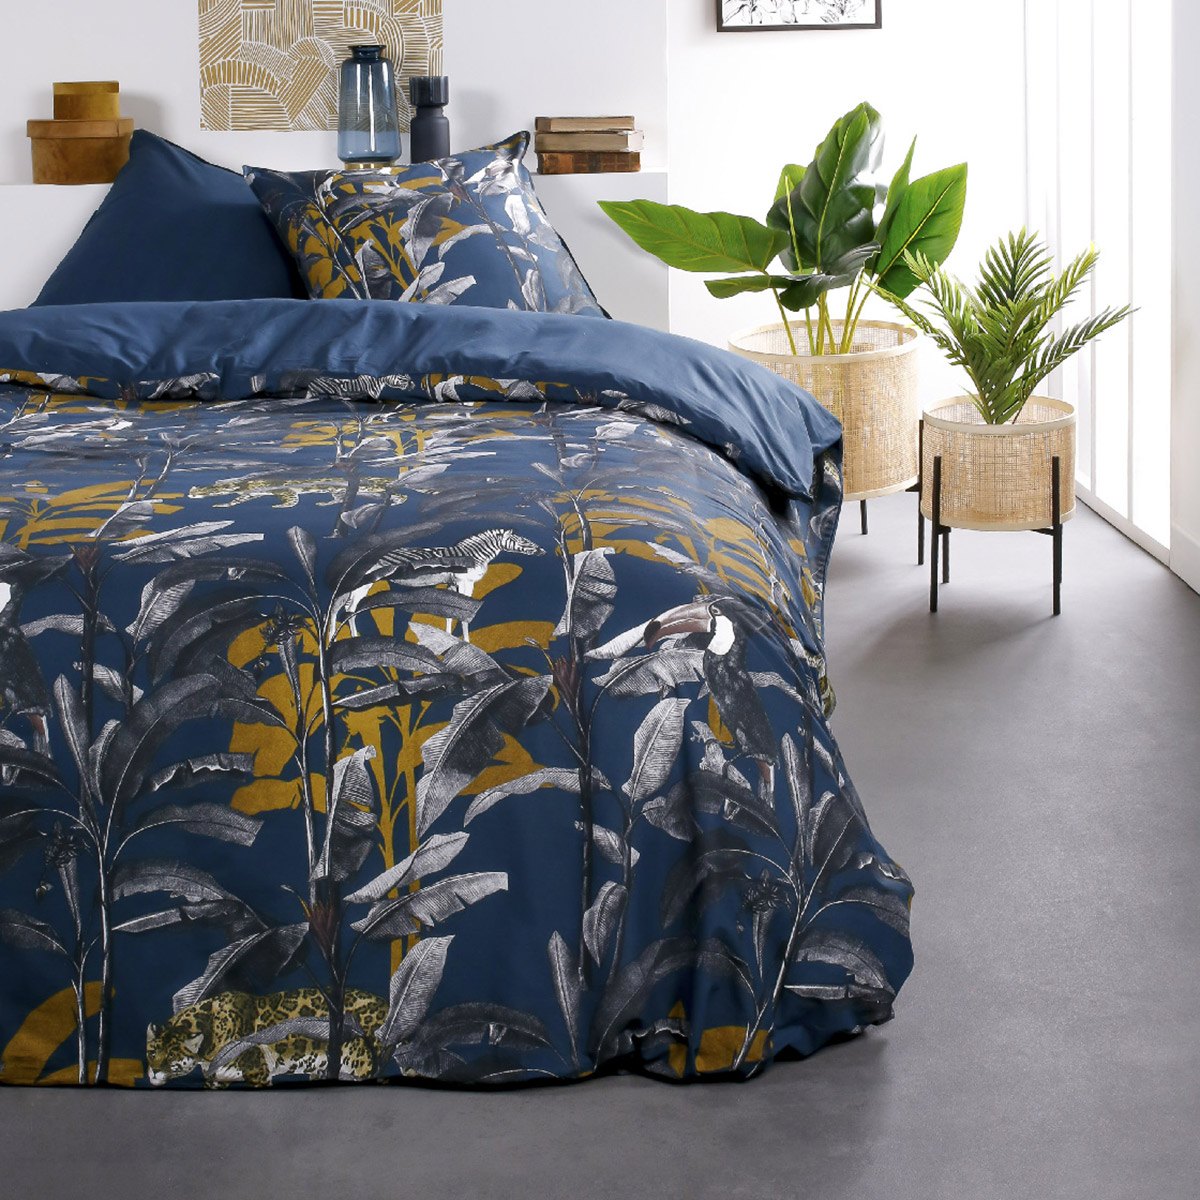 Parure de lit 2 personnes imprimé jungle en Coton Bleu 240x260 cm